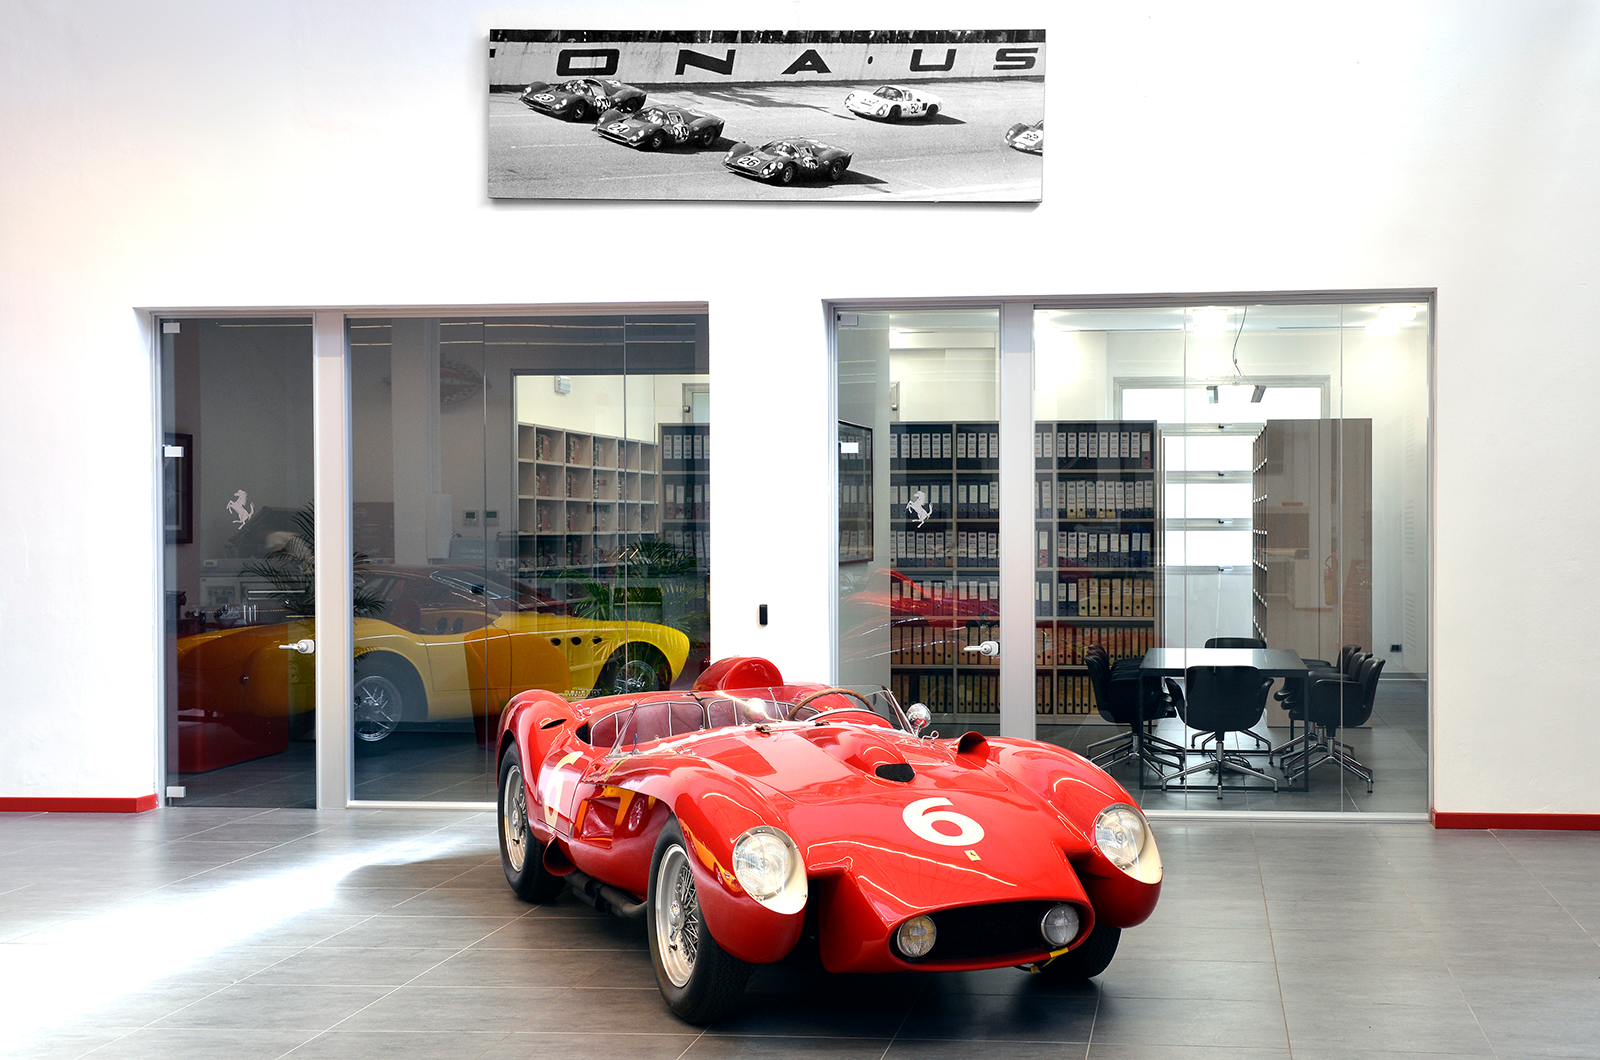 Classic & Sports Car – Behind the Ferrari Classiche curtain